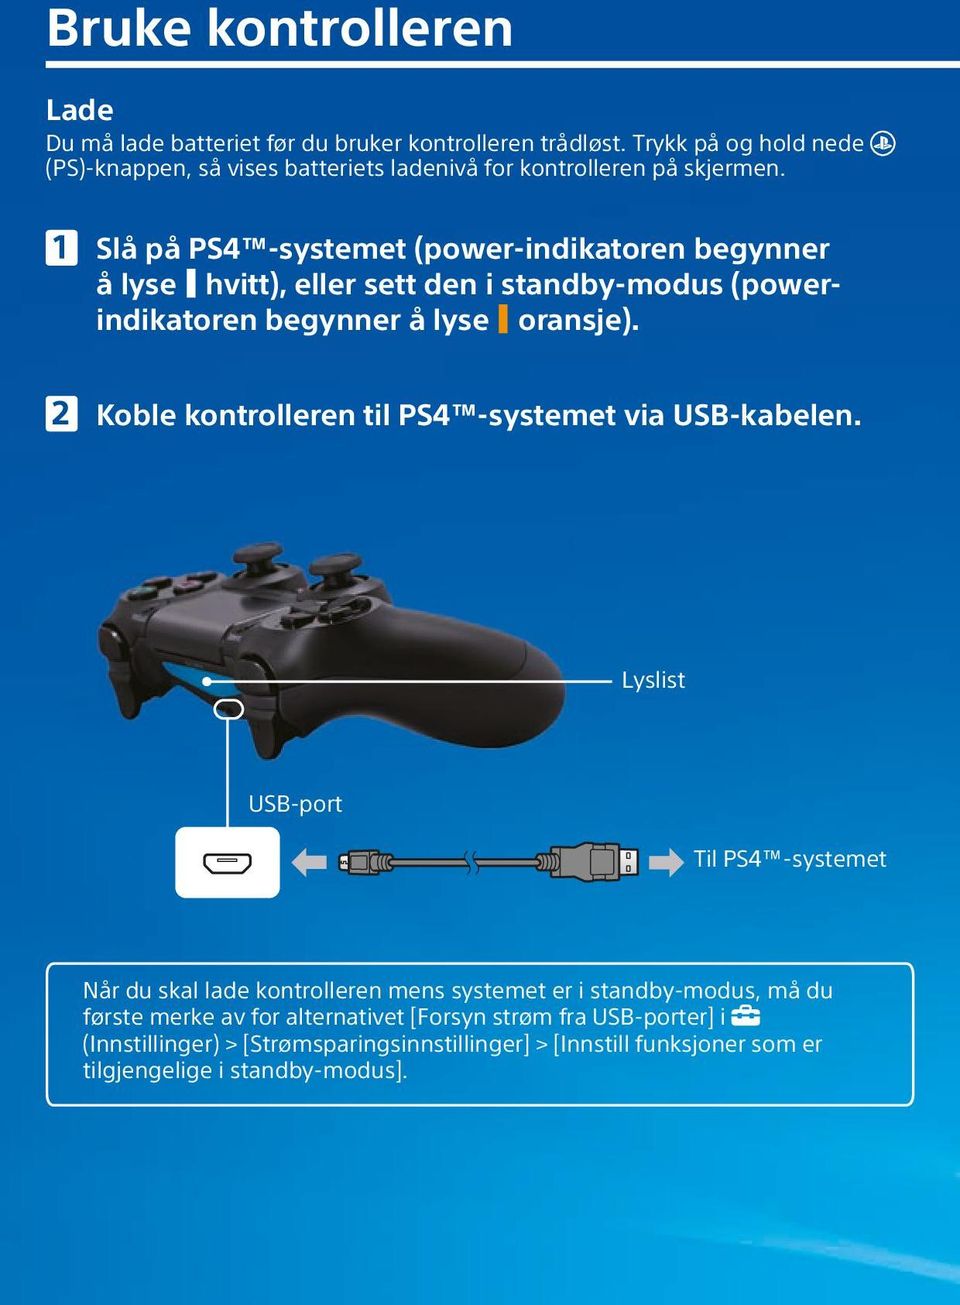 Slå på PS4 -systemet (power-indikatoren begynner å lyse hvitt), eller sett den i standby-modus (powerindikatoren begynner å lyse oransje).